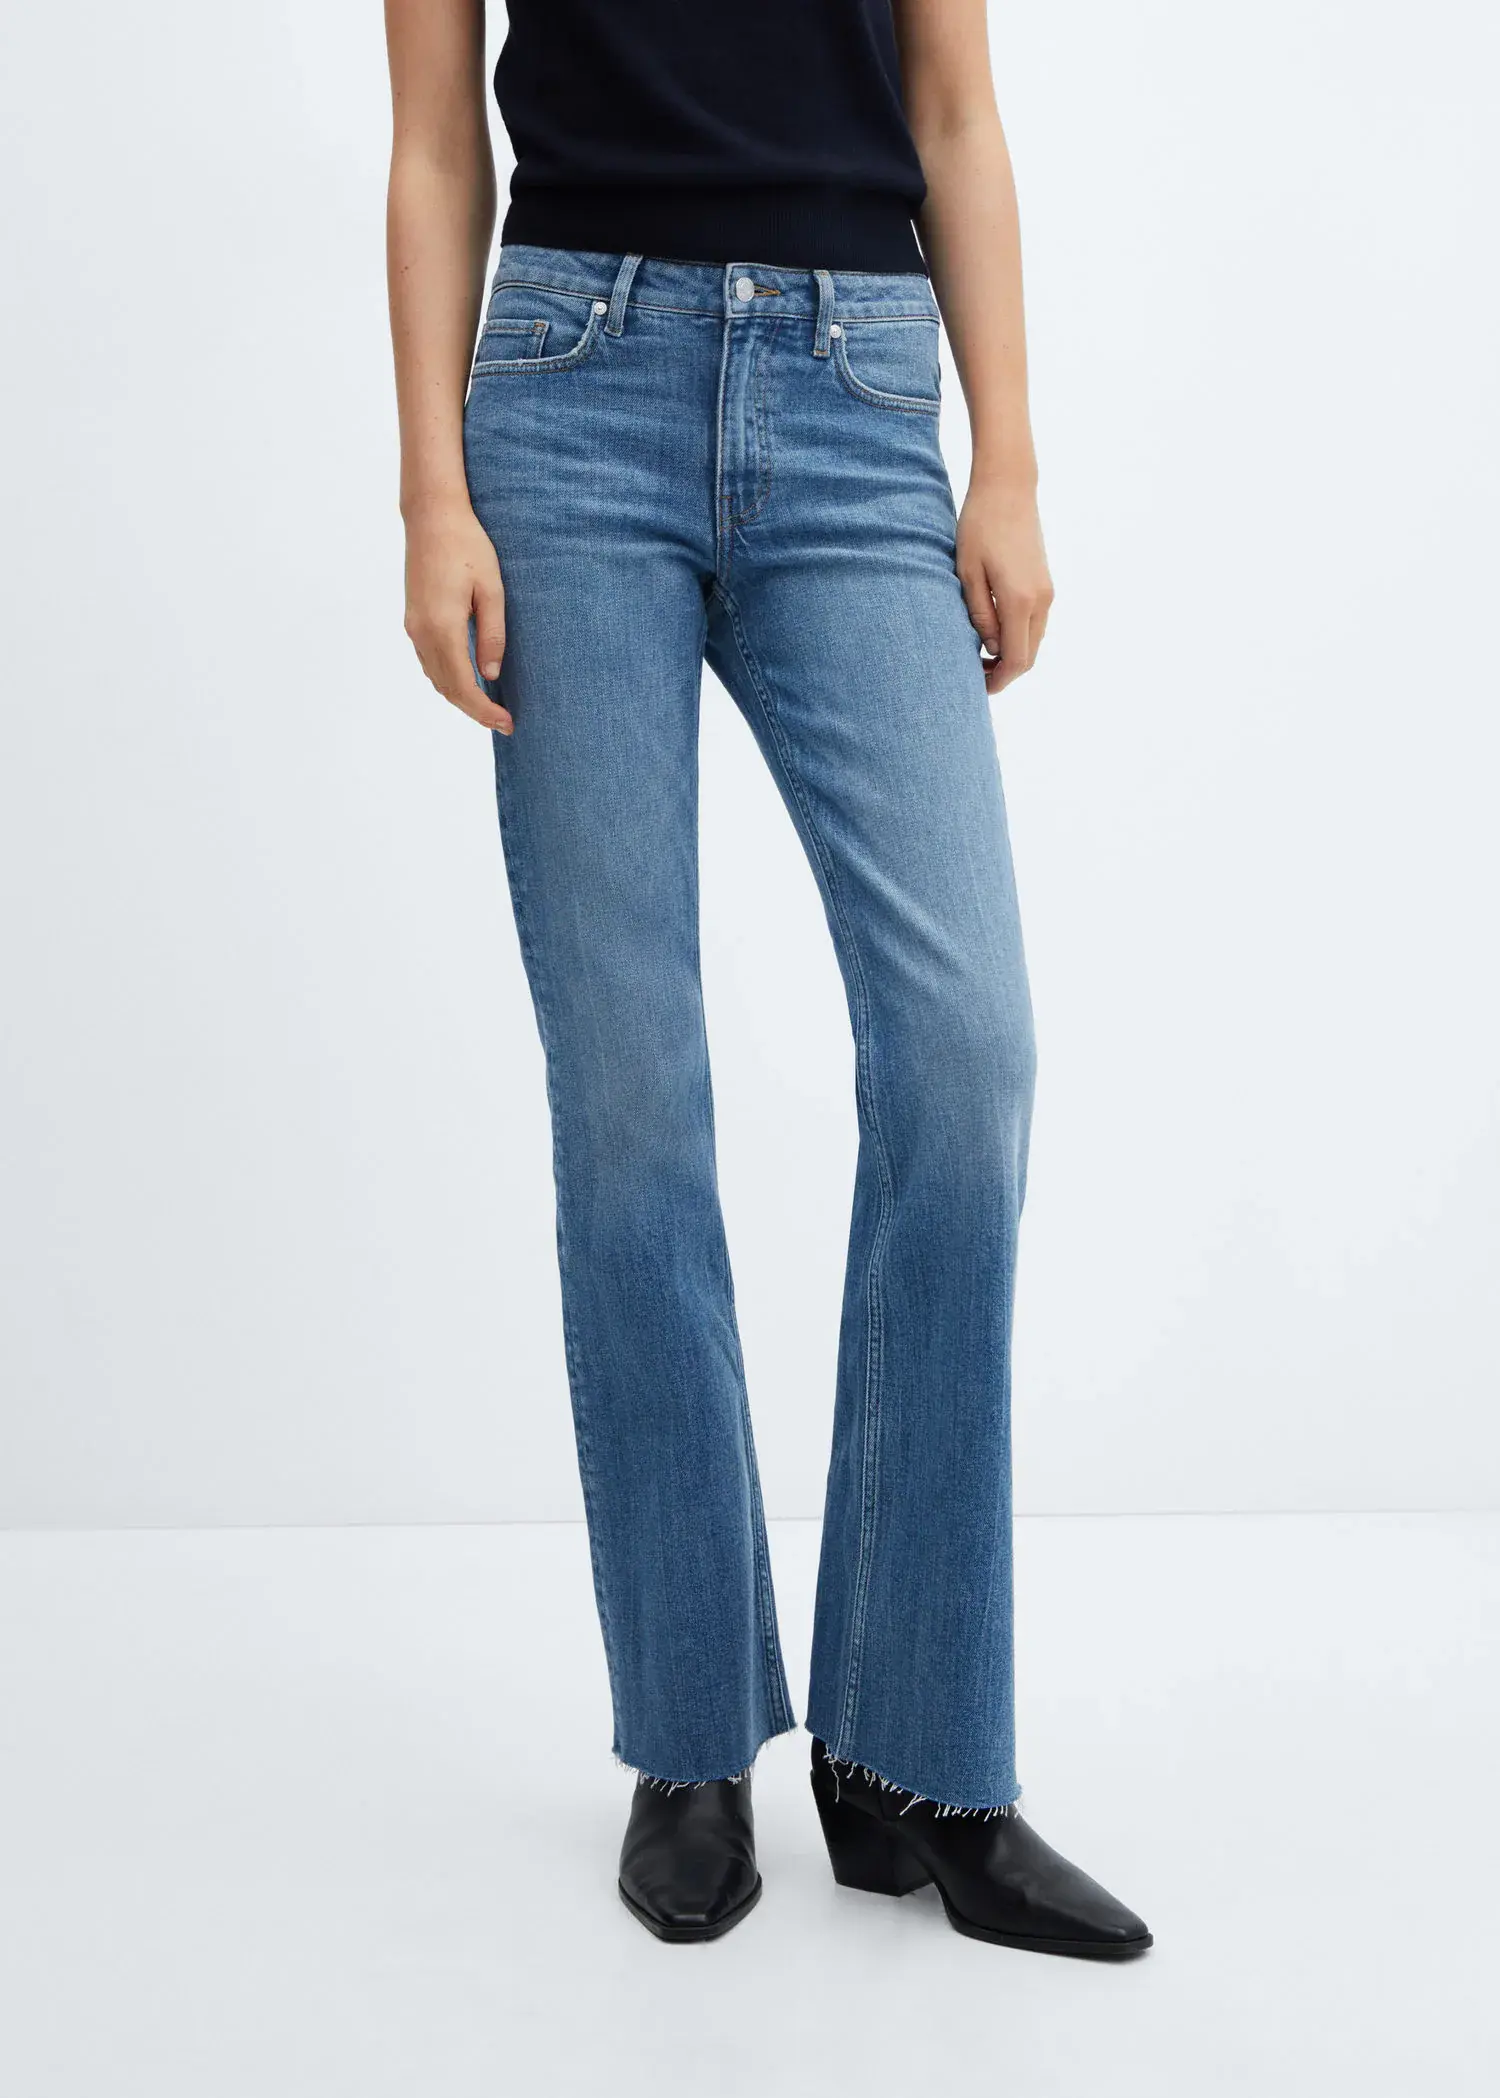 Mango Flared-Jeans mit mittlerer Bundhöhe. 2